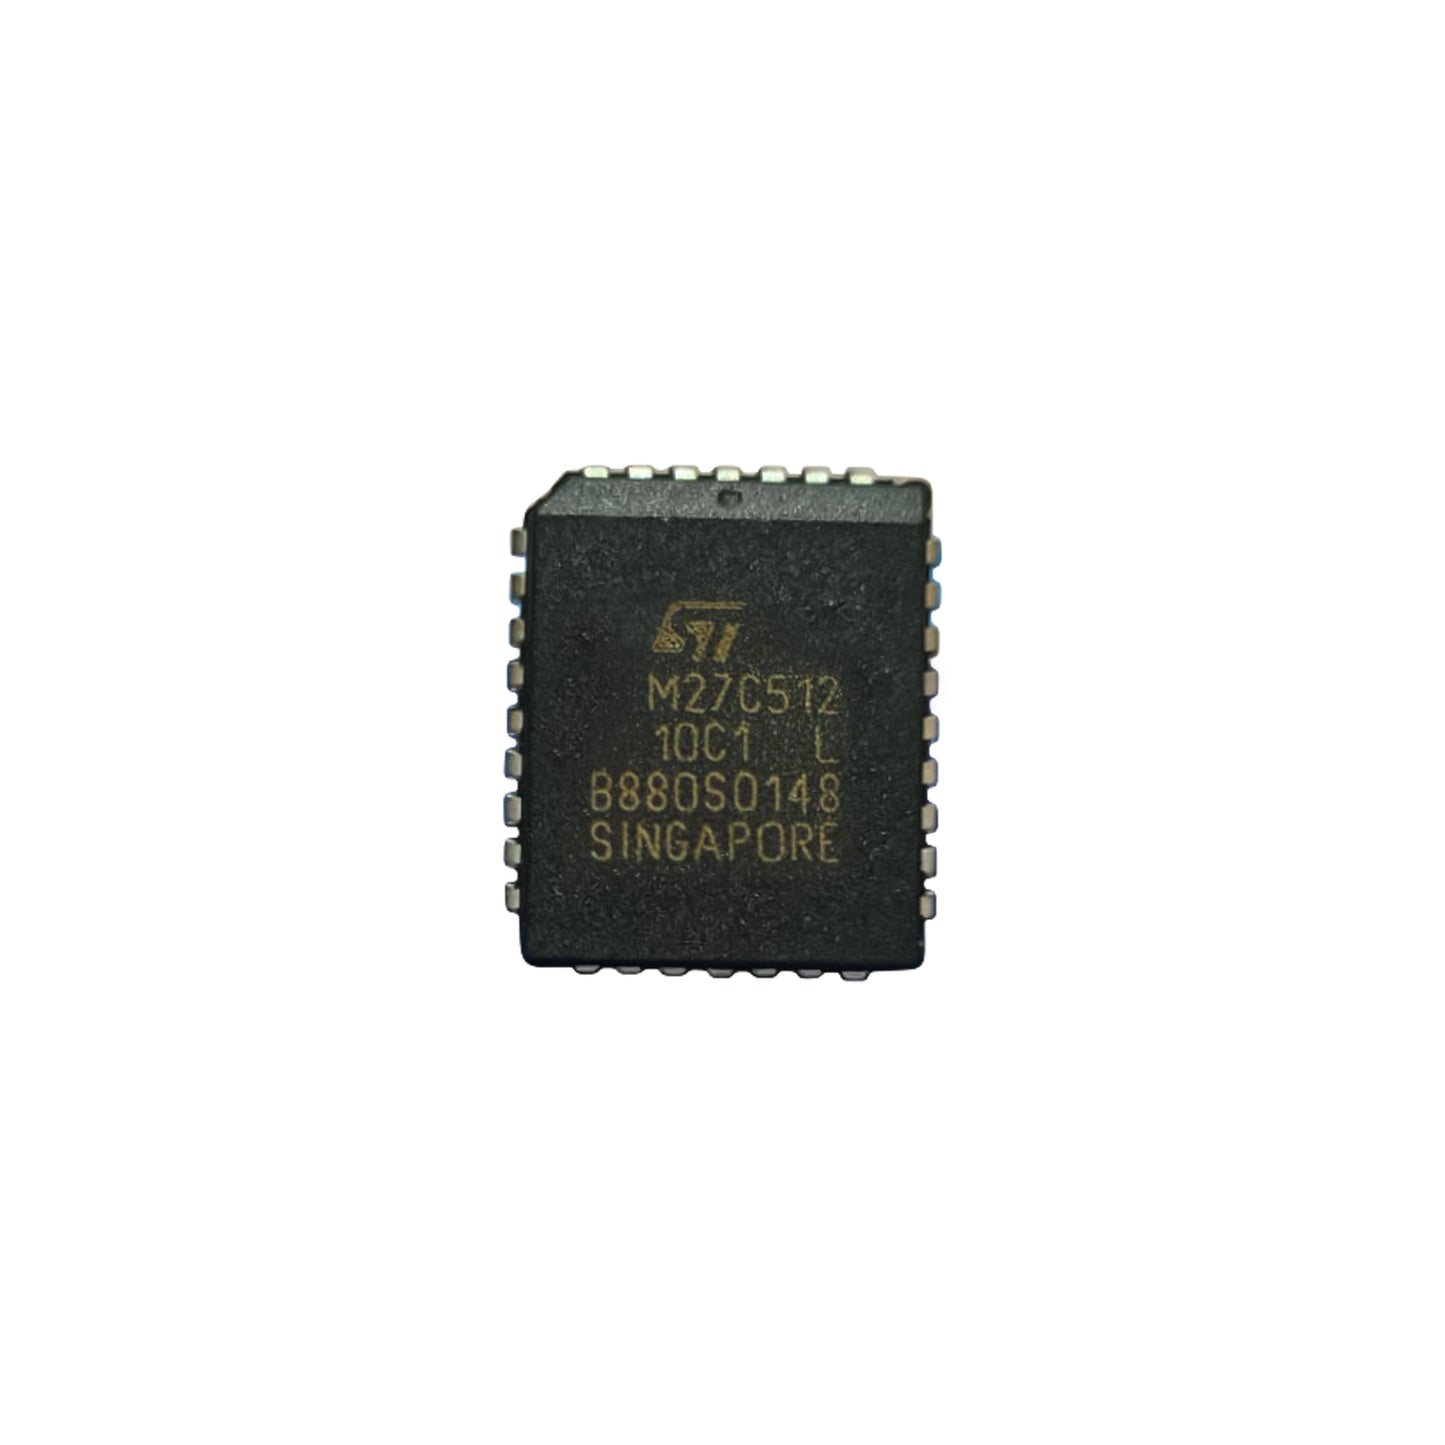 MITSUBISHI M27C512-10C1 Componente elettronico, circuito integrato, 32 contatti